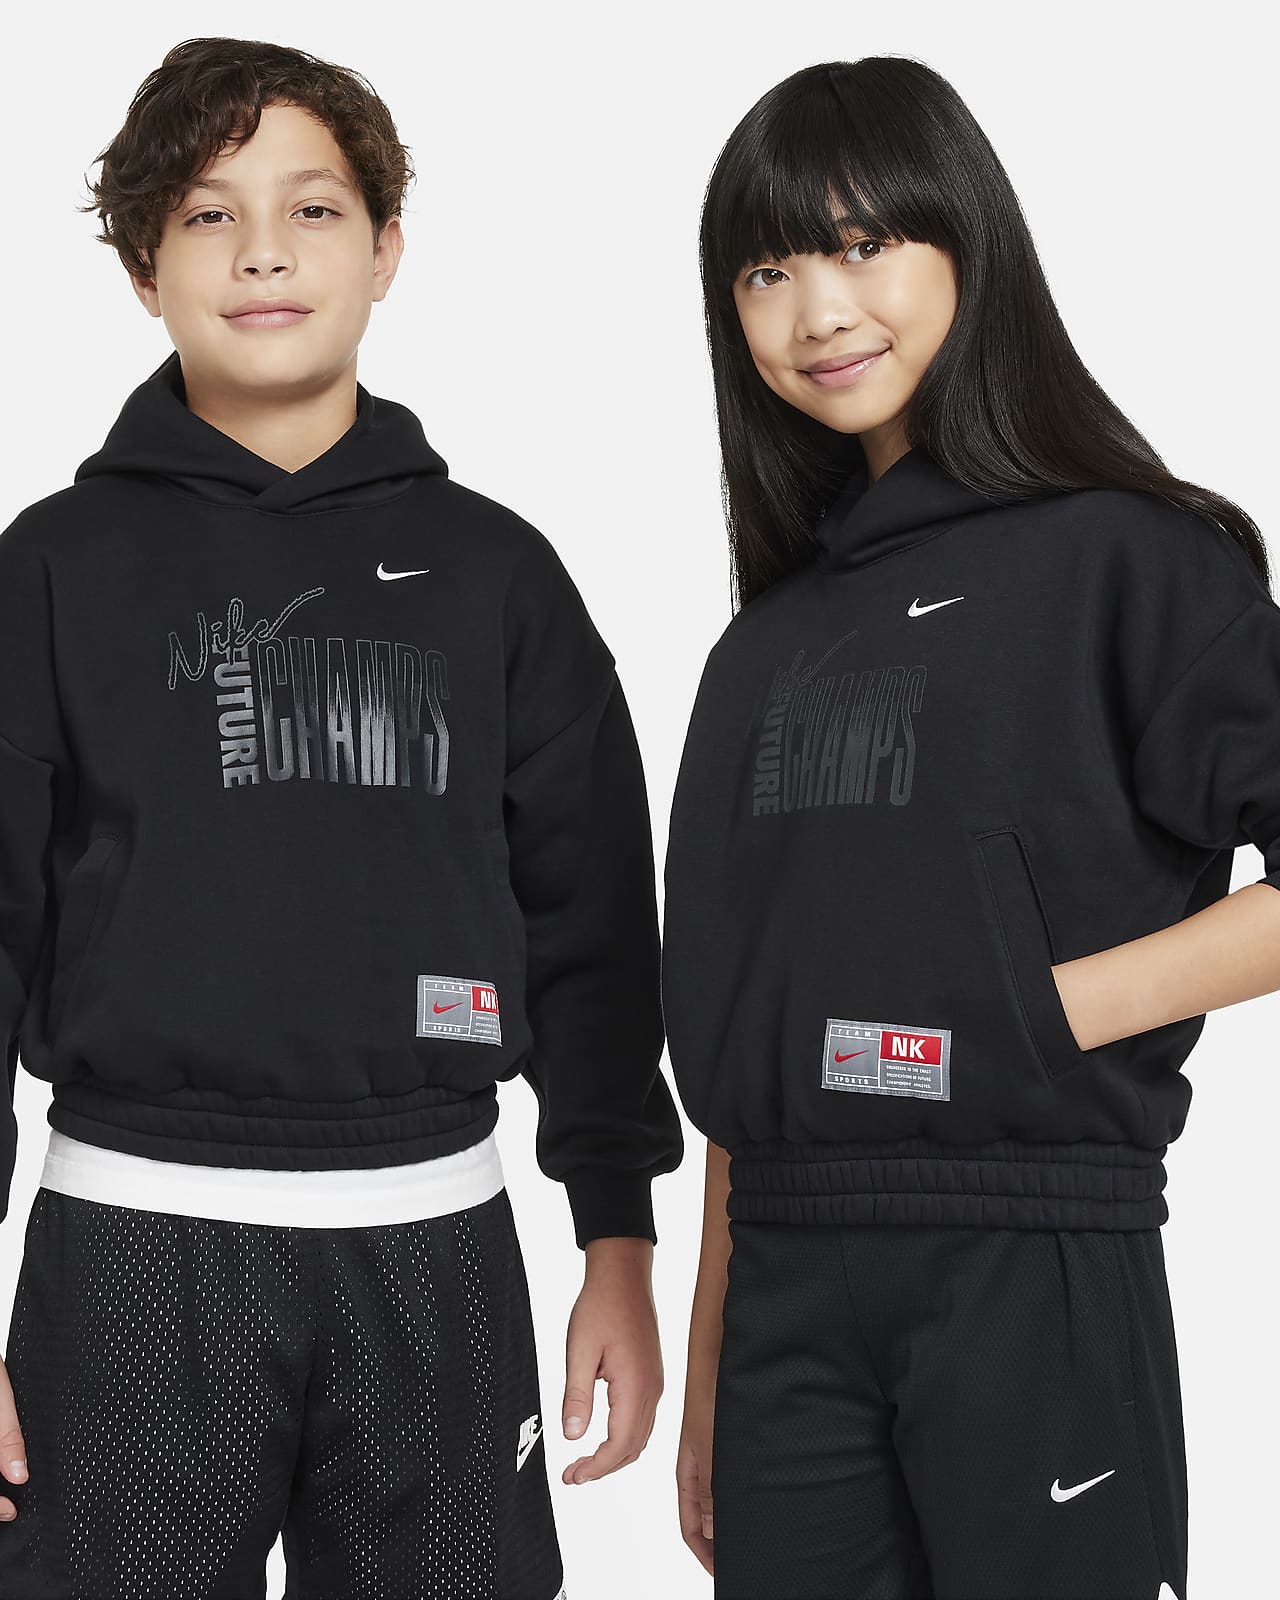 Nike Culture of Basketball Fleece Genç Çocuk Kapüşonlu Sweatshirt'ü